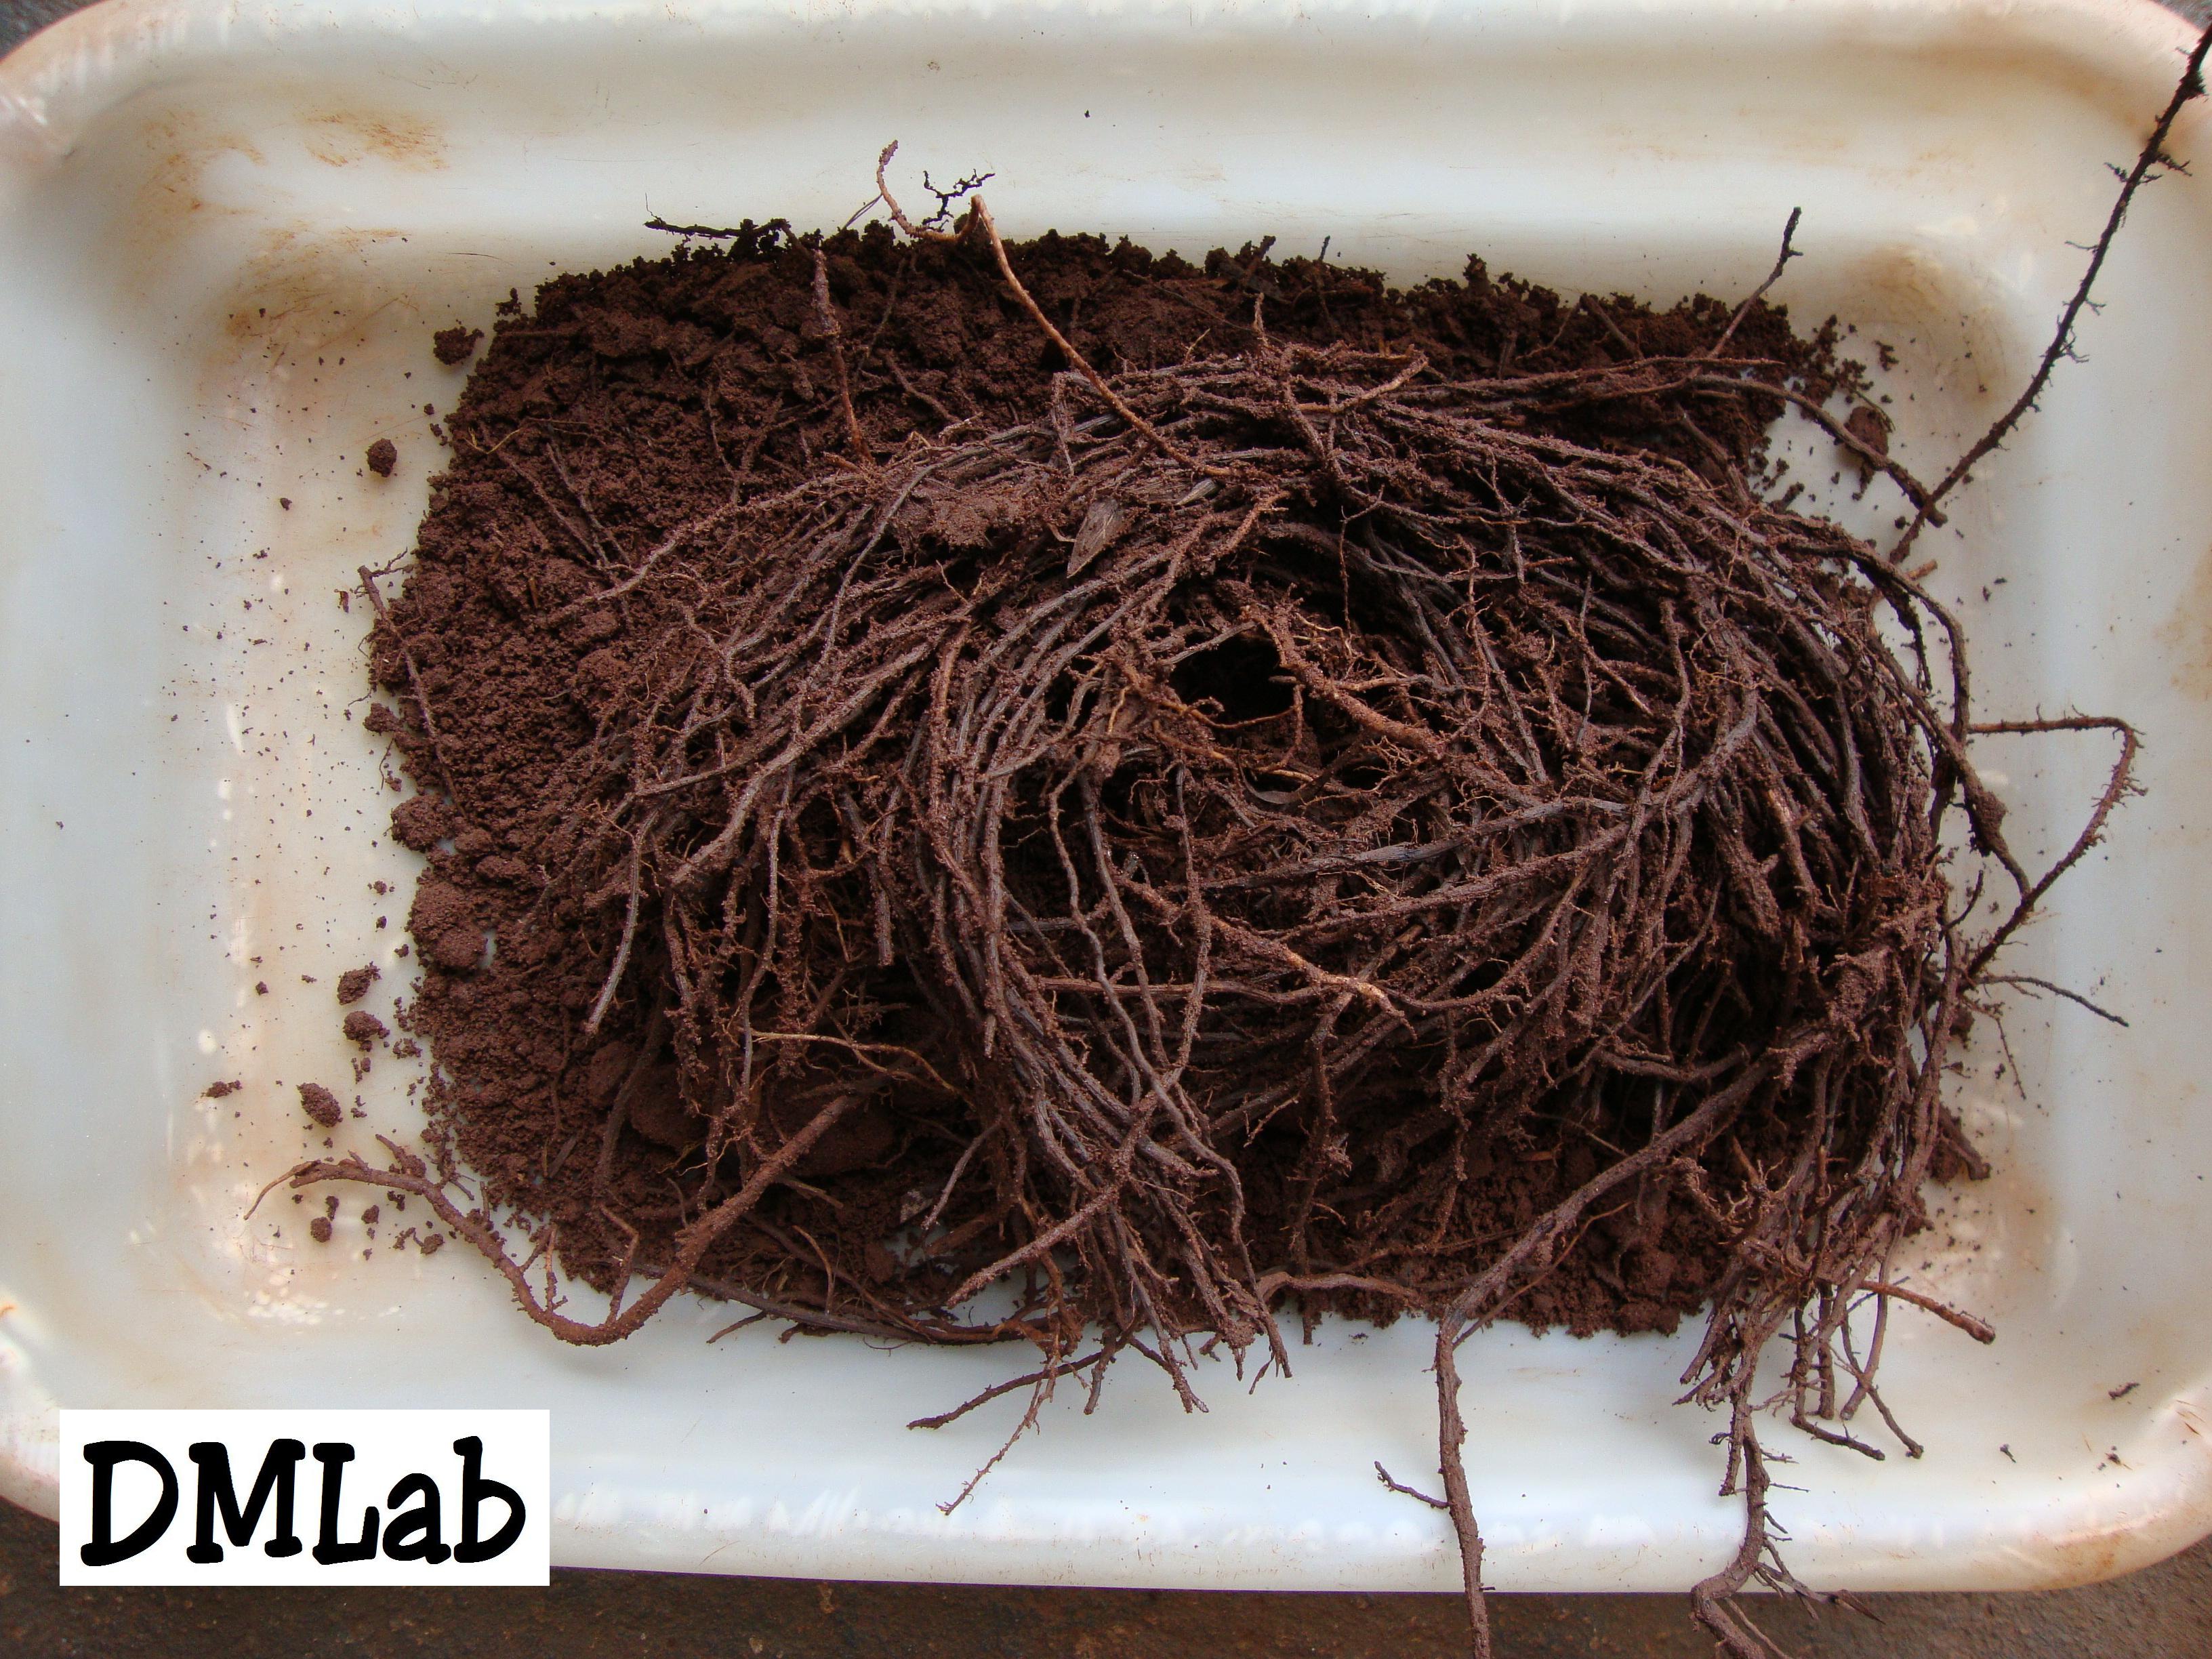 Amostra contendo raízes e solo para análise nematológica.